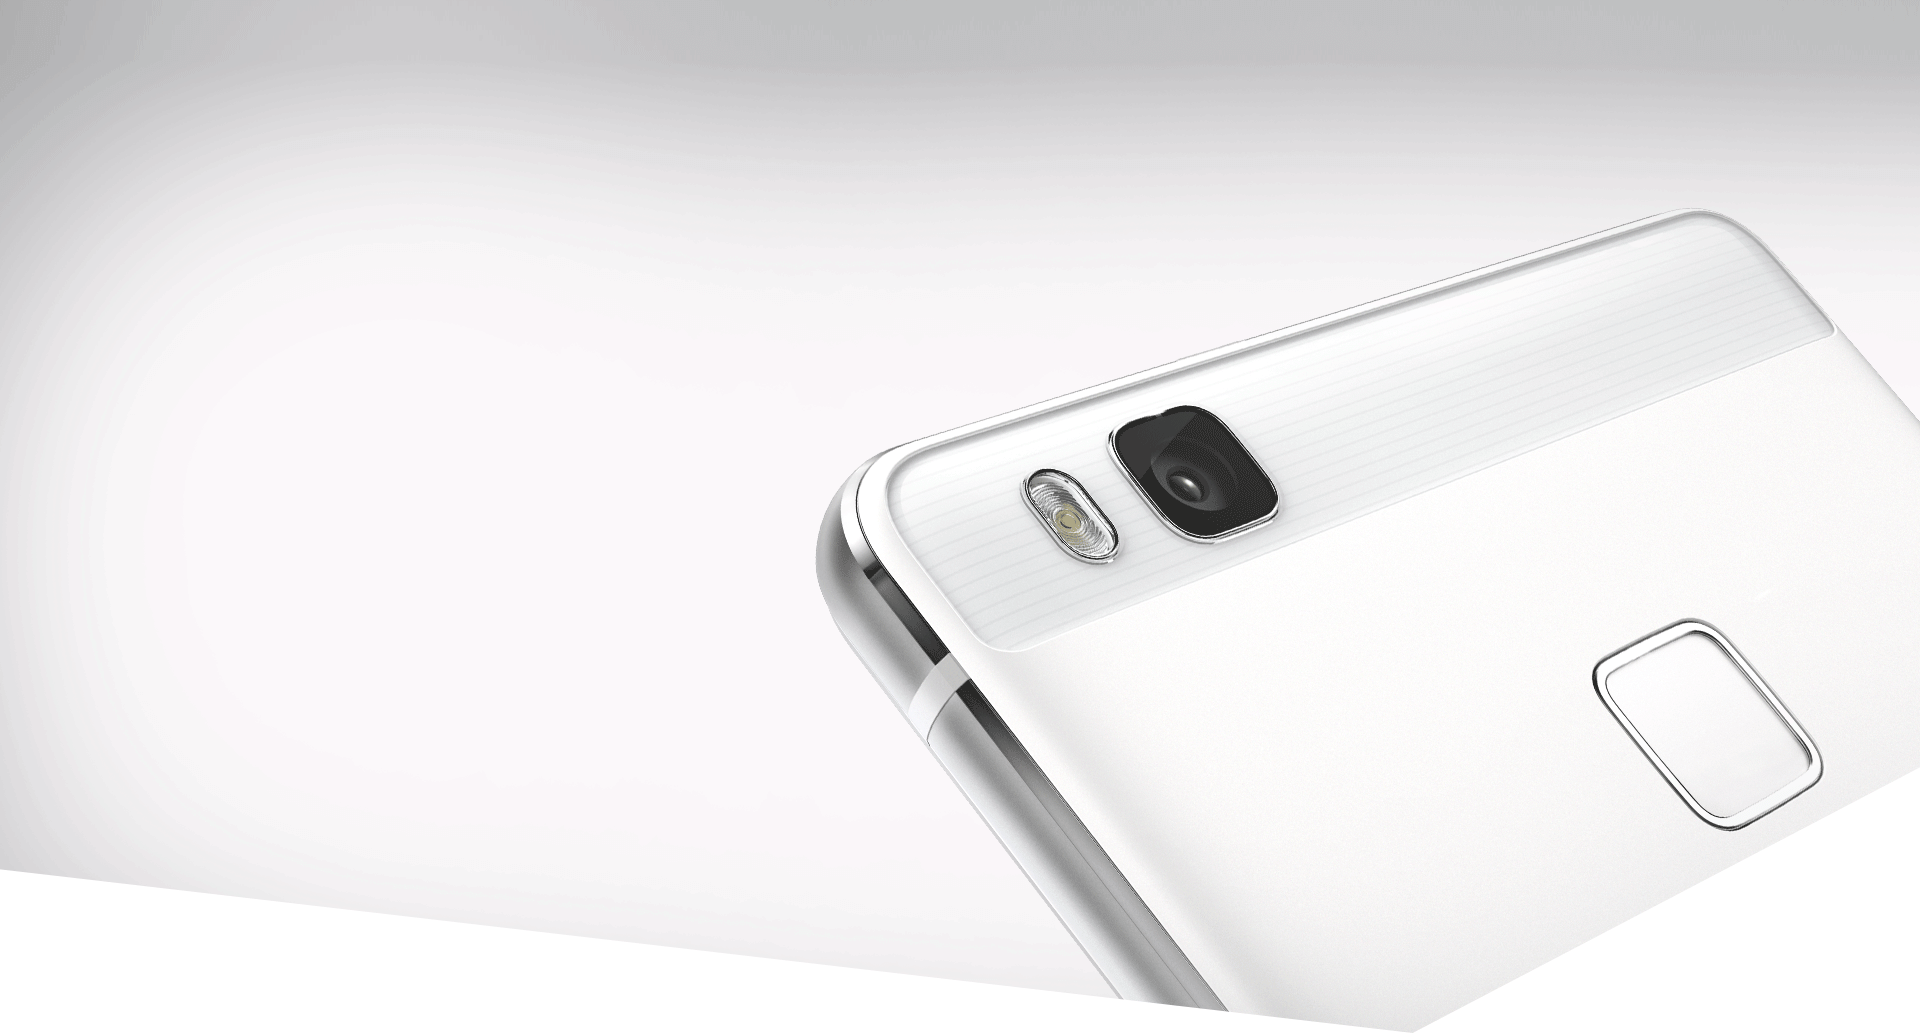 Come acquistare Huawei P9 Lite a prezzo scontato con Amazon Prime Day 2017